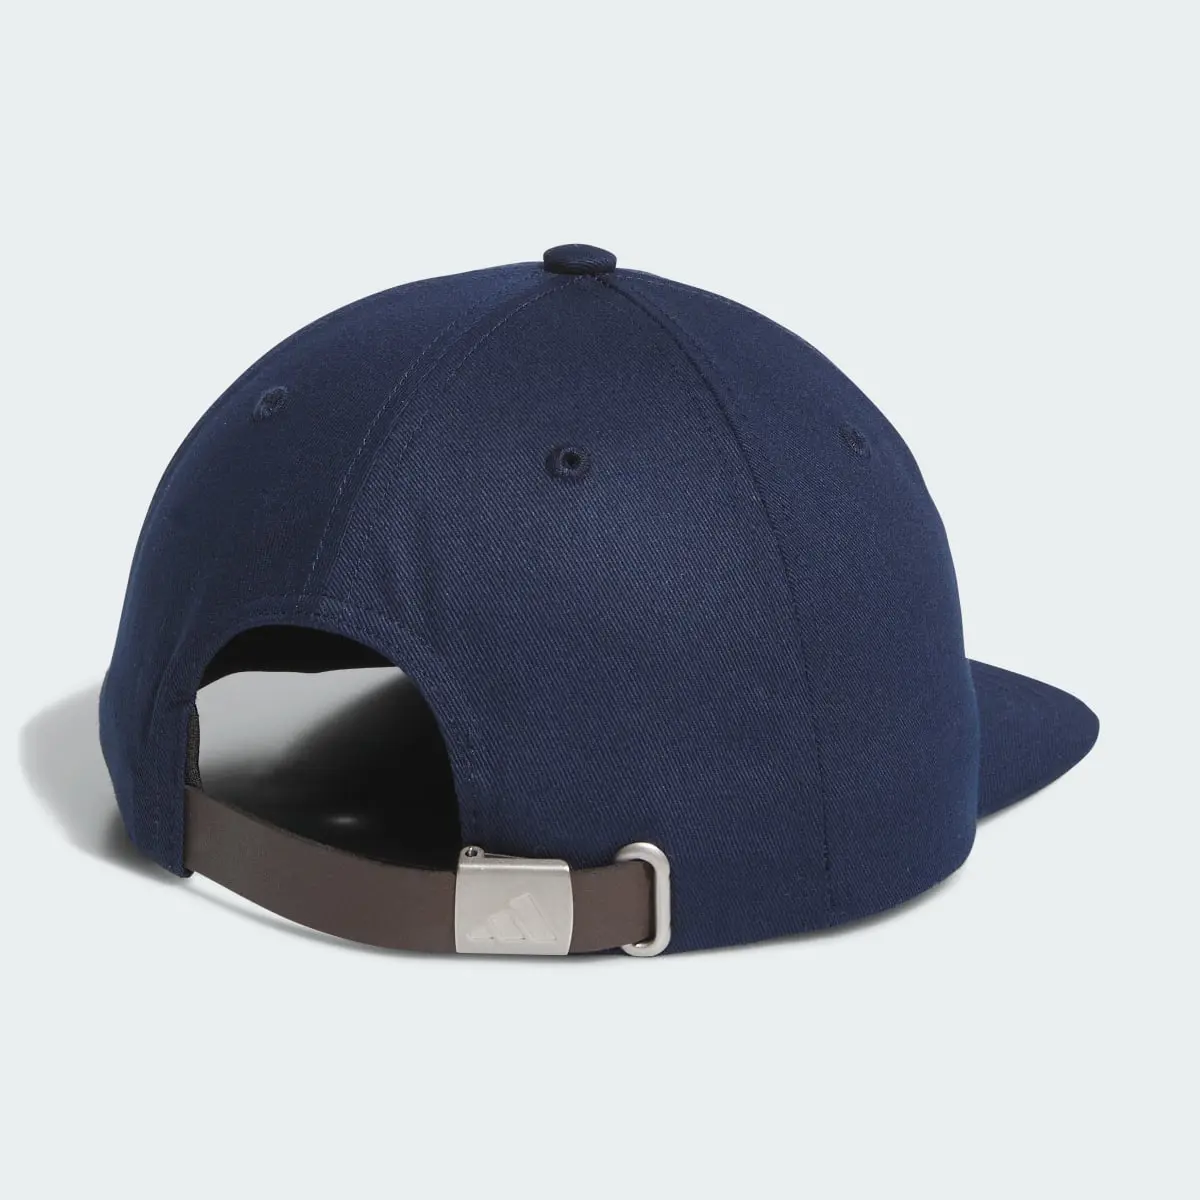 Adidas Clutch Hat. 3